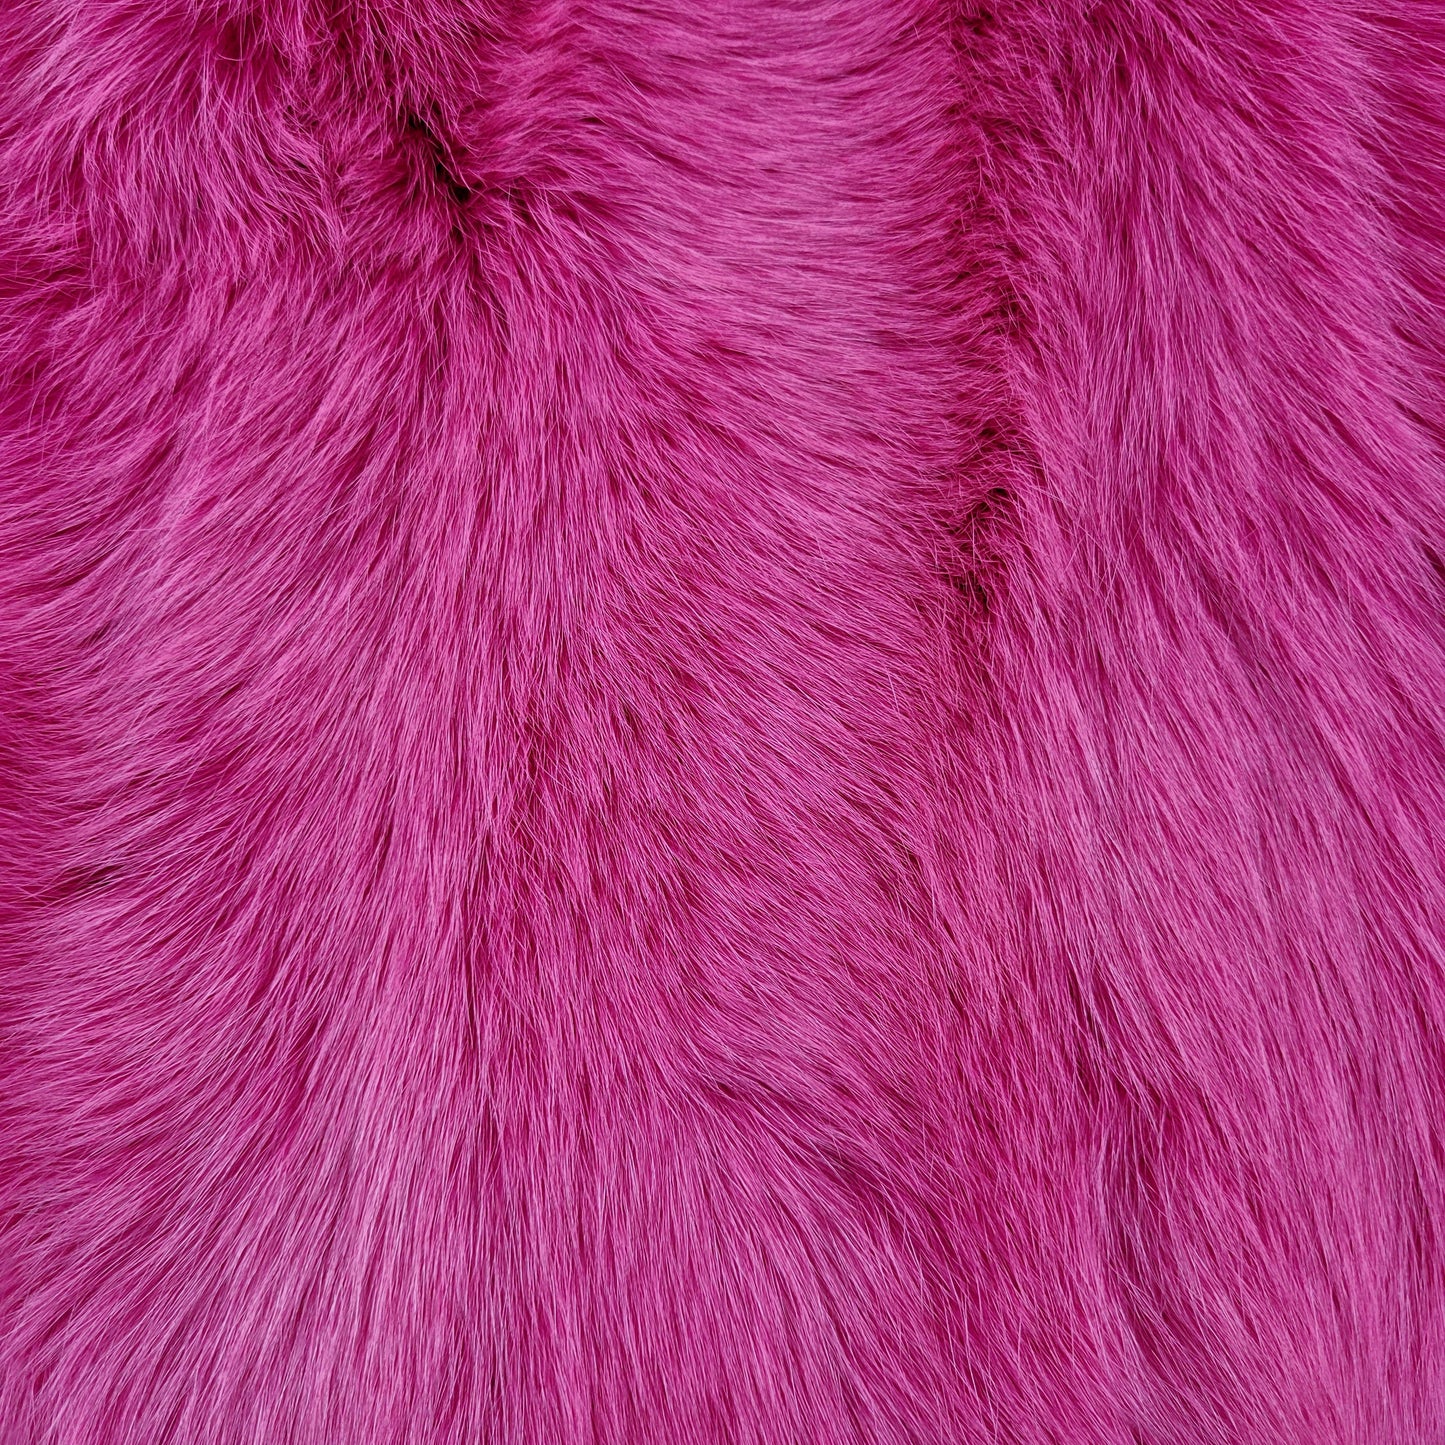 Dyed Shadow Fox Fur - Magenta